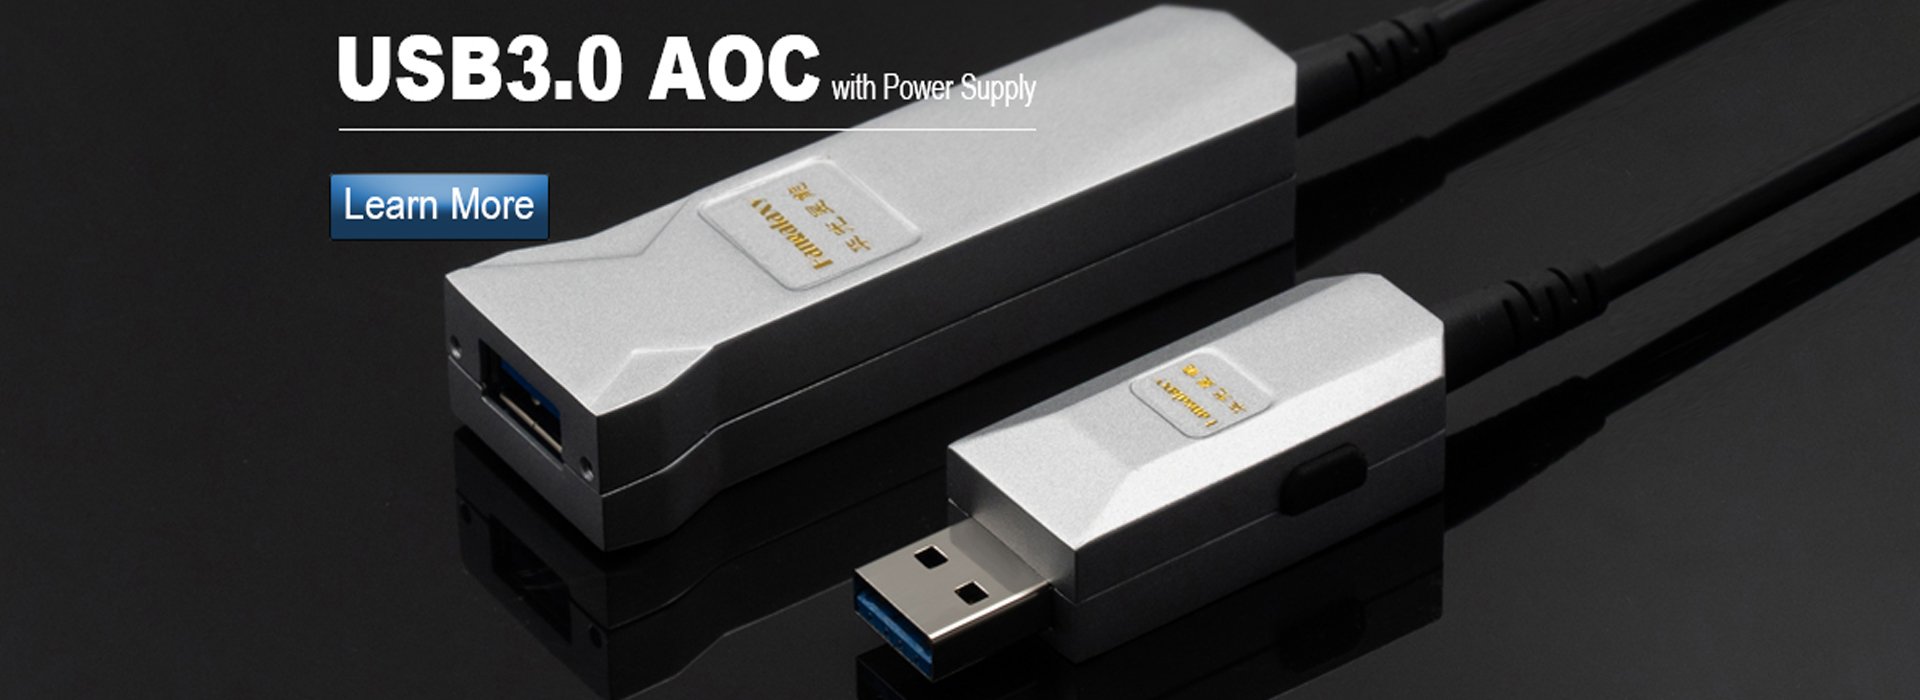 USB3.0 AOC